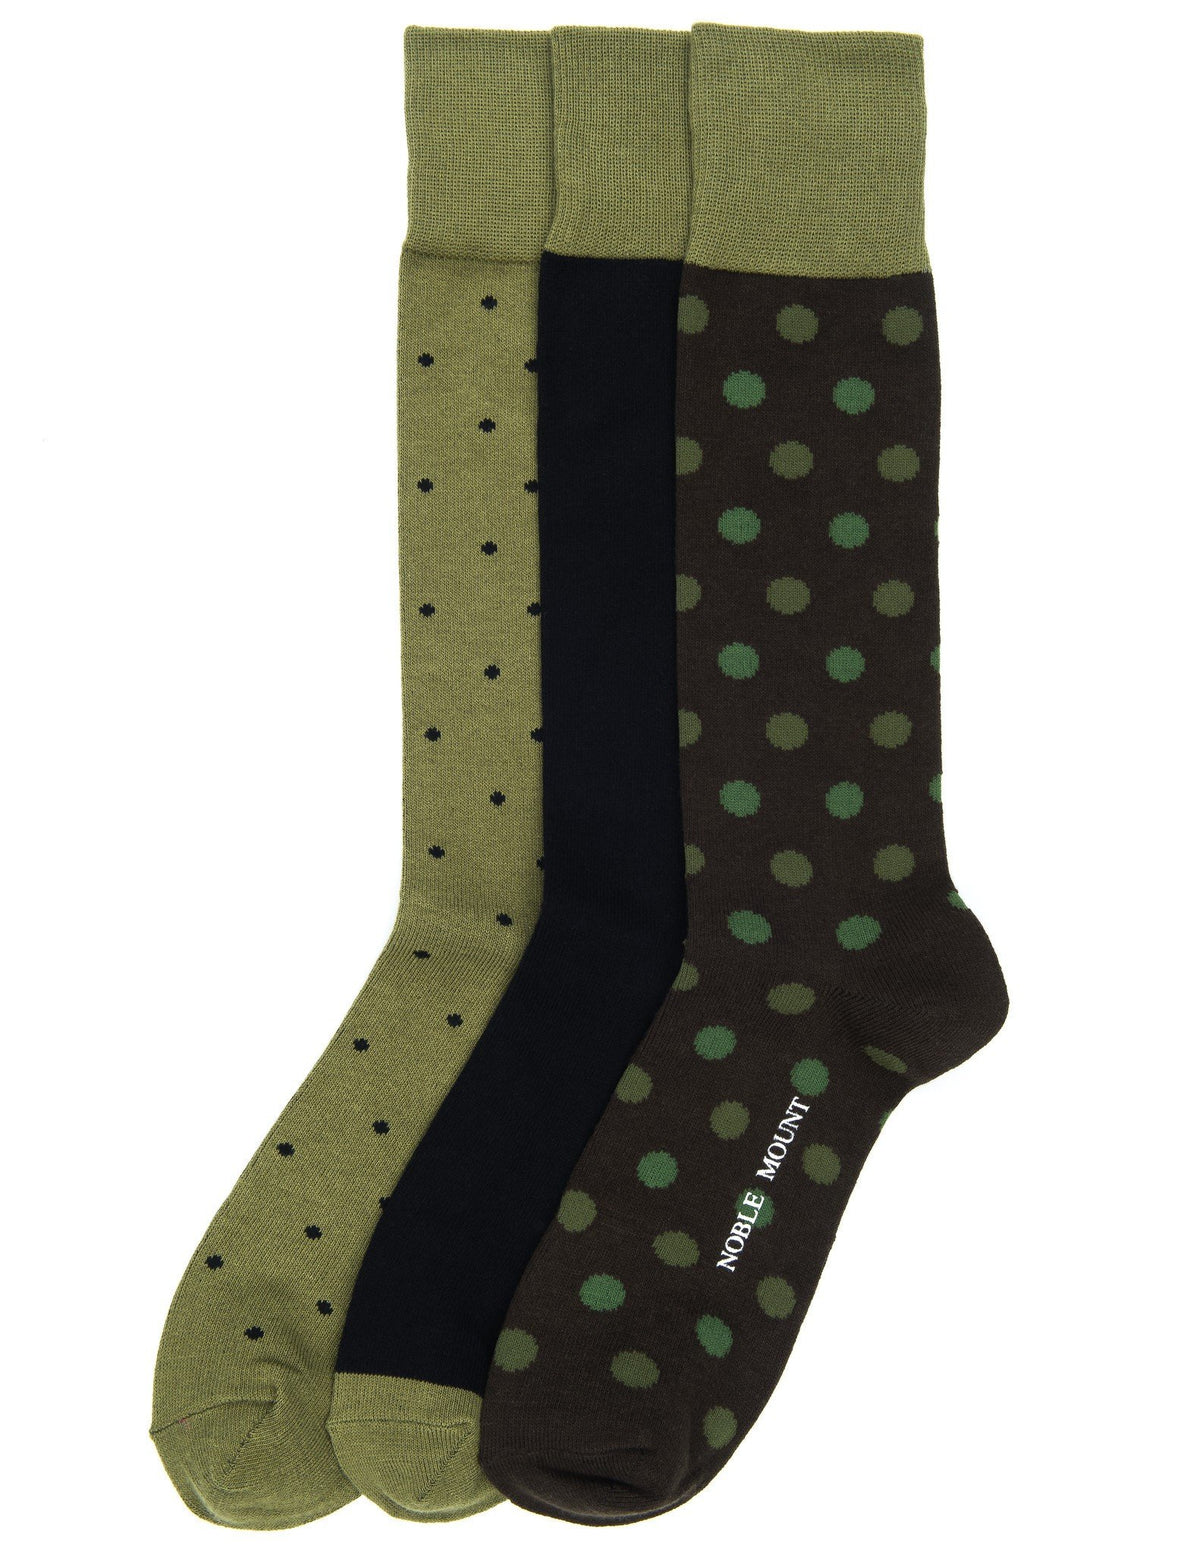 Men's Combed Cotton Dress Socks 3-Pack - Set A7